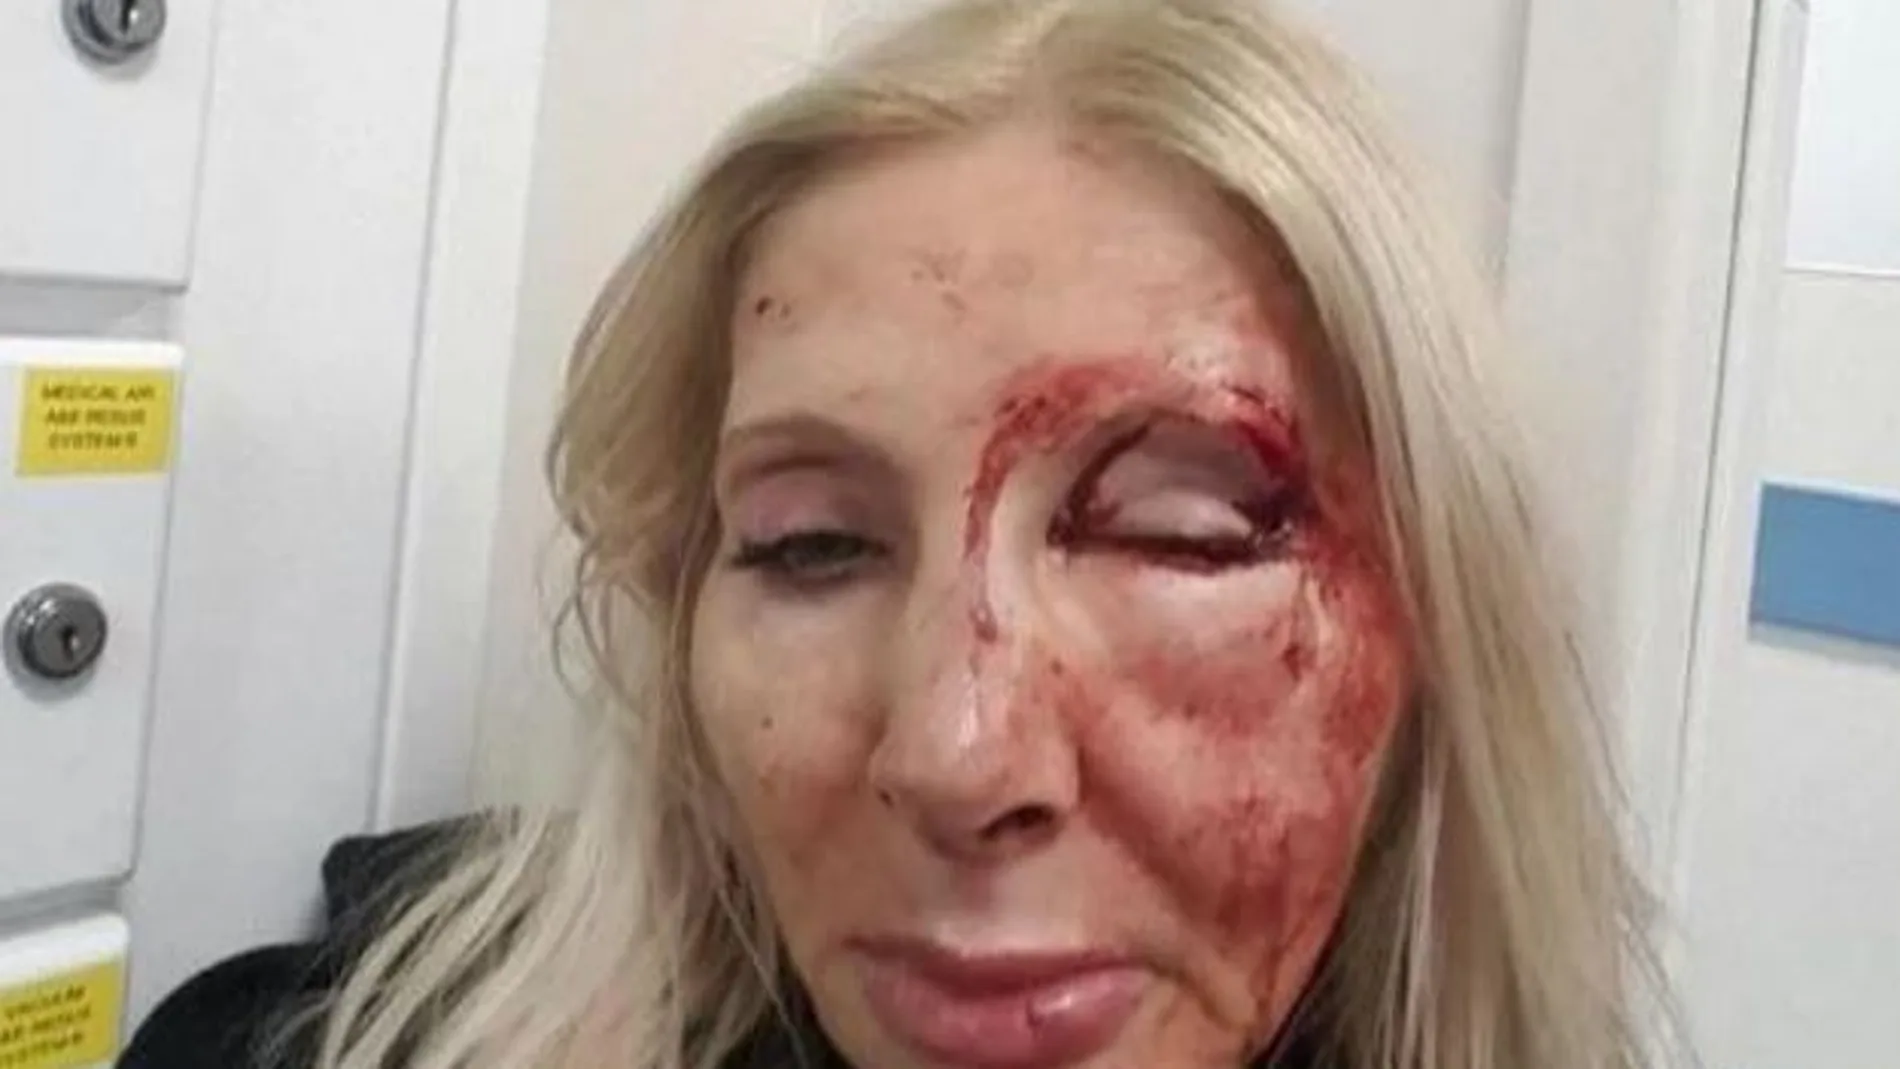 El rostro de la mujer tras ser brutalmente atacada